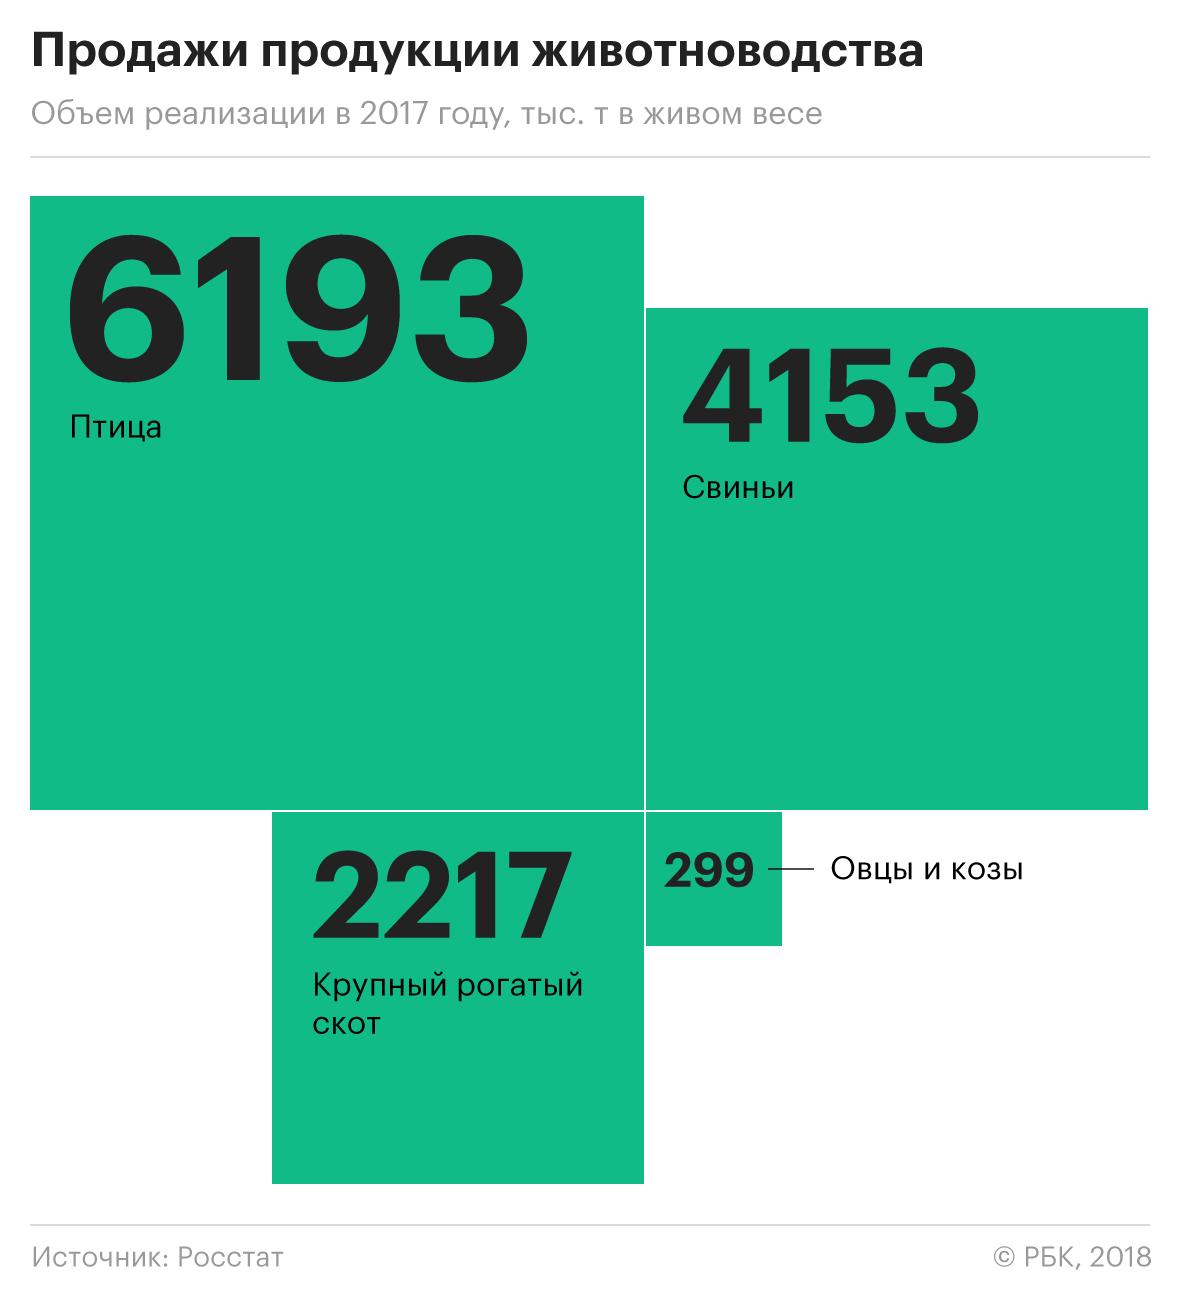 «Мираторг» инвестирует в производство ягнятины 27,5 млрд руб.